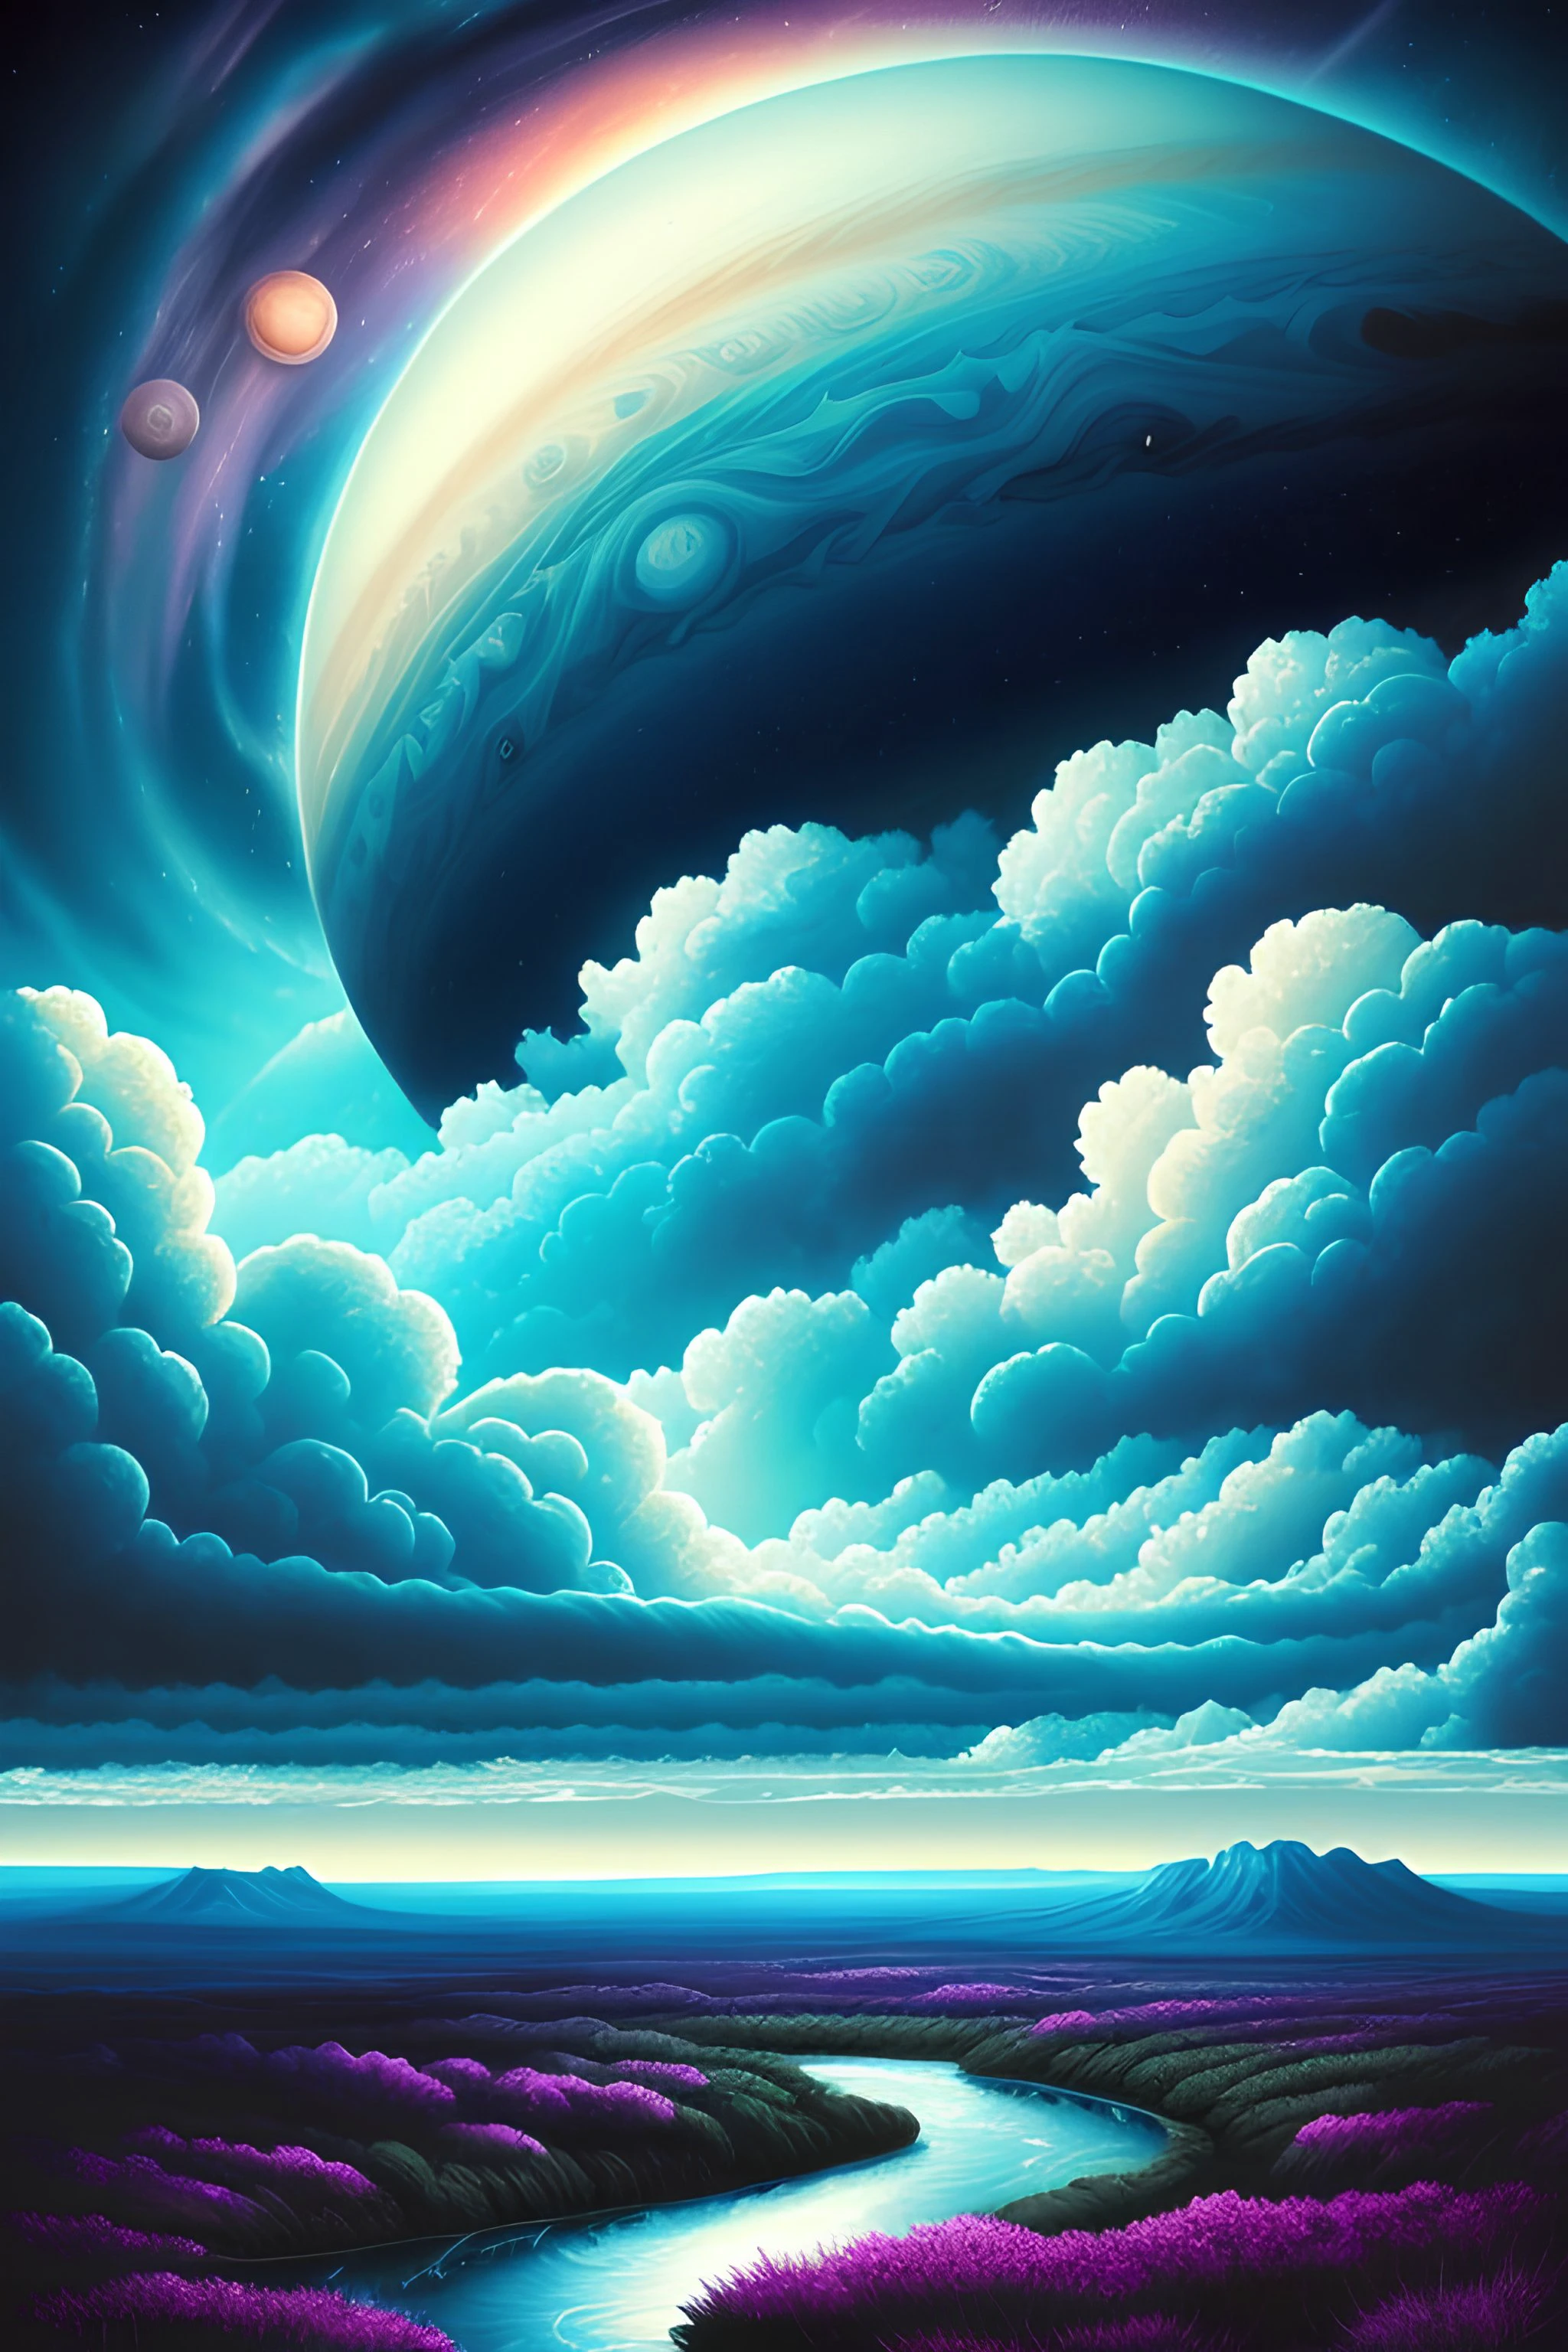 ダン・マムフォードによる木星の雲のイラスト, 異国の風景と植生, 壮大なシーン, 渦巻く雲がたくさん, 高い露出, 非常に詳細な, 現実的, 鮮やかな青みがかった色, 超高解像度